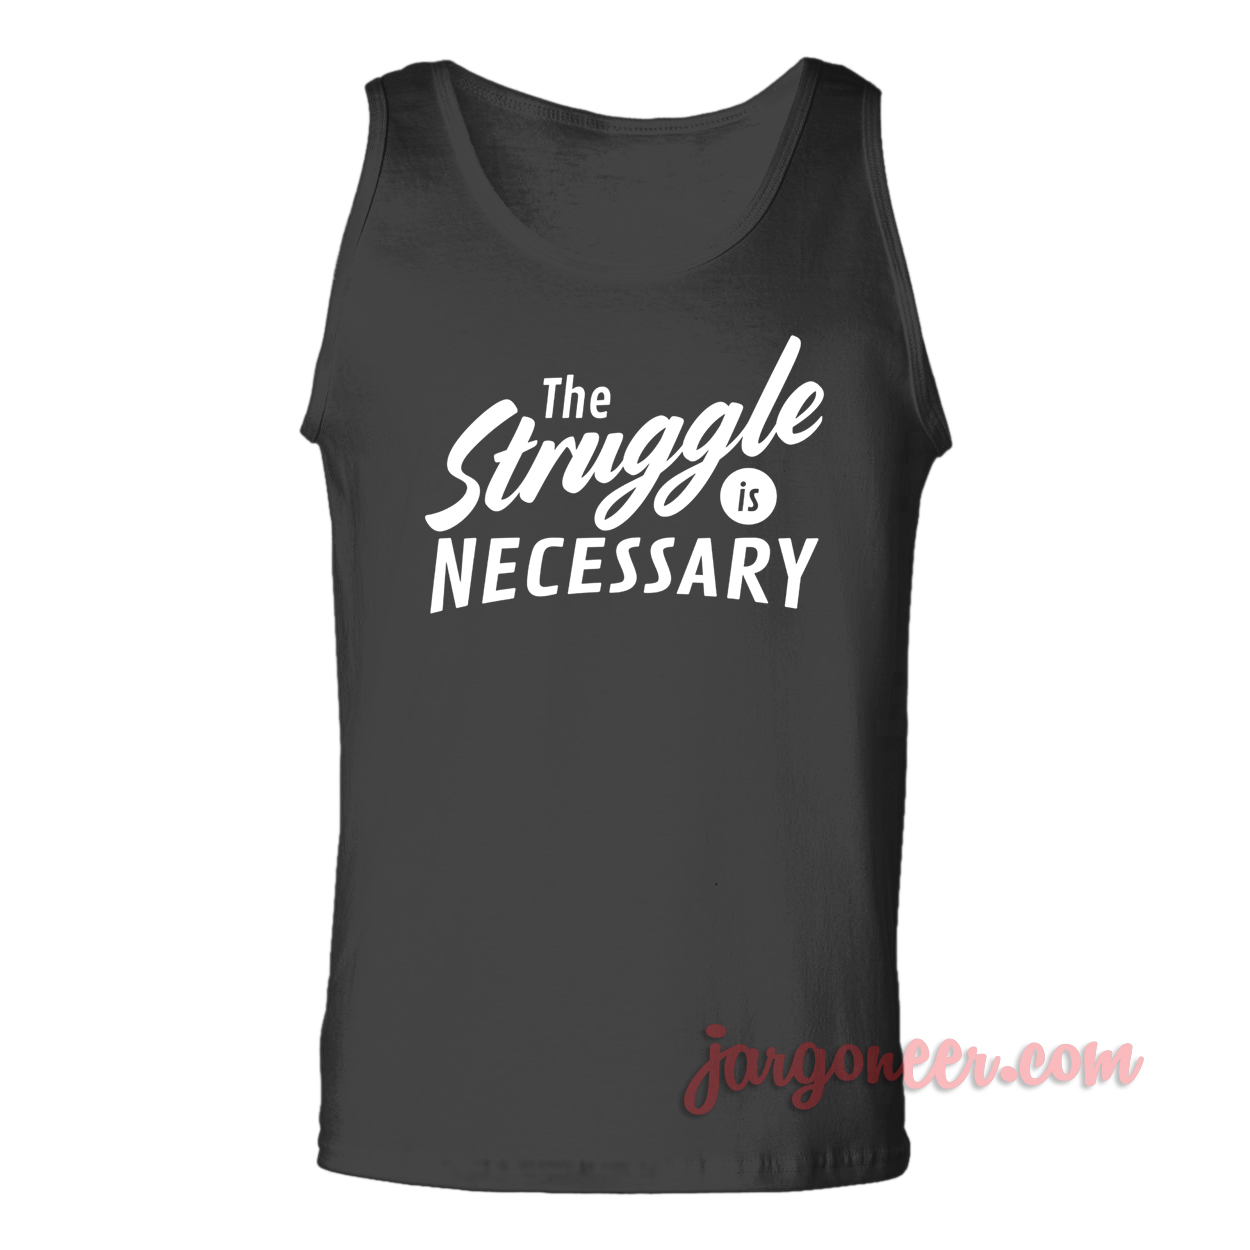 The Struggle - Shop Unique Graphic Cool Shirt Designs